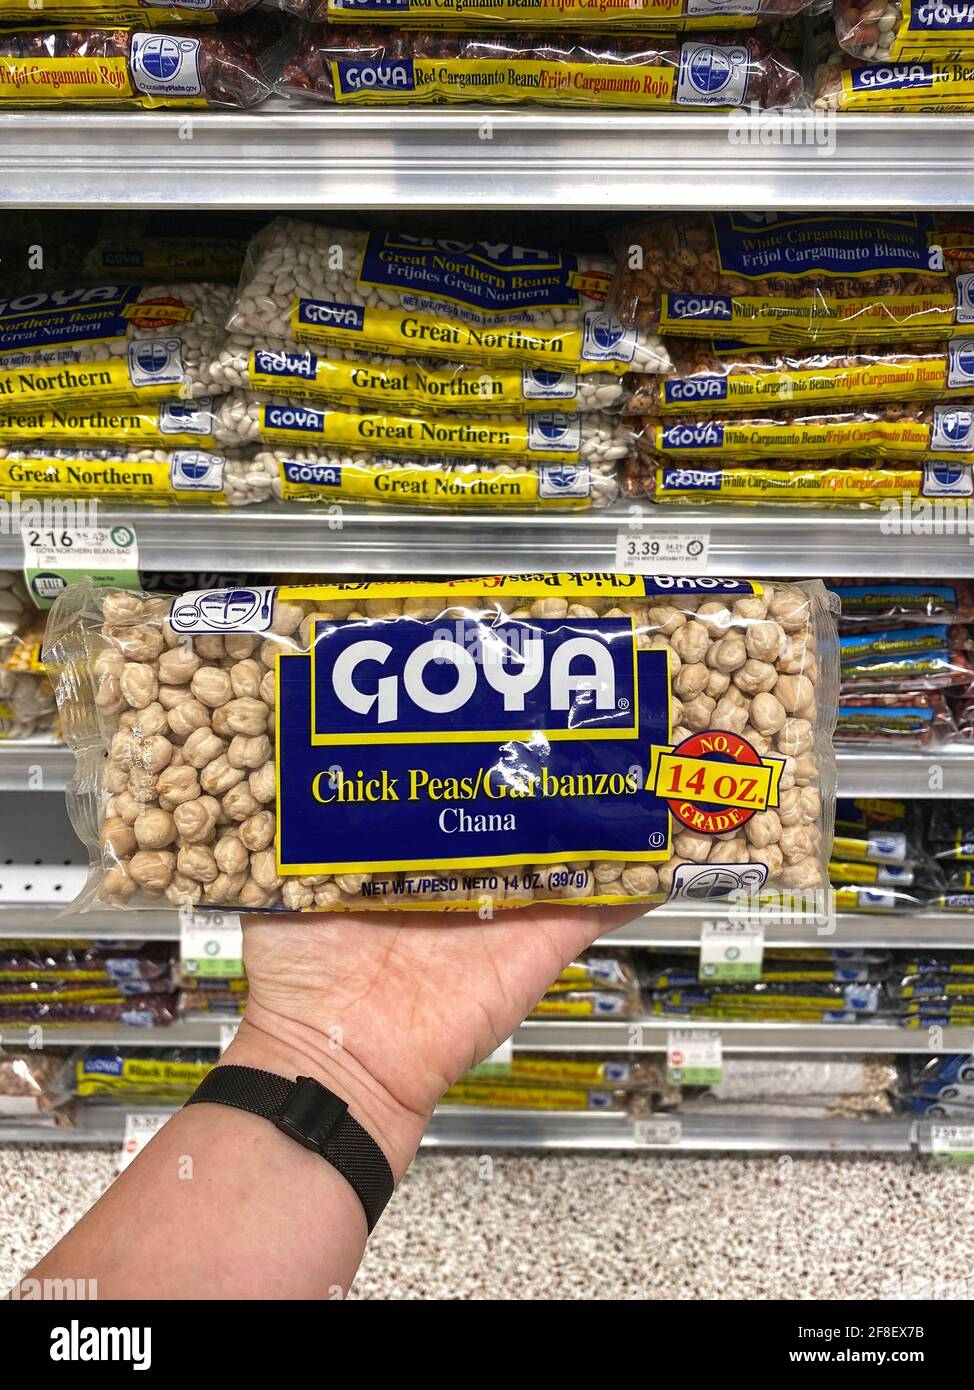 Bohnen der Marke Goya und andere Lebensmittel in einem Lebensmittelgeschäft Gang. Person, die einen Beutel MIT GOYA-Kichererbsen in der Hand hält. Stockfoto